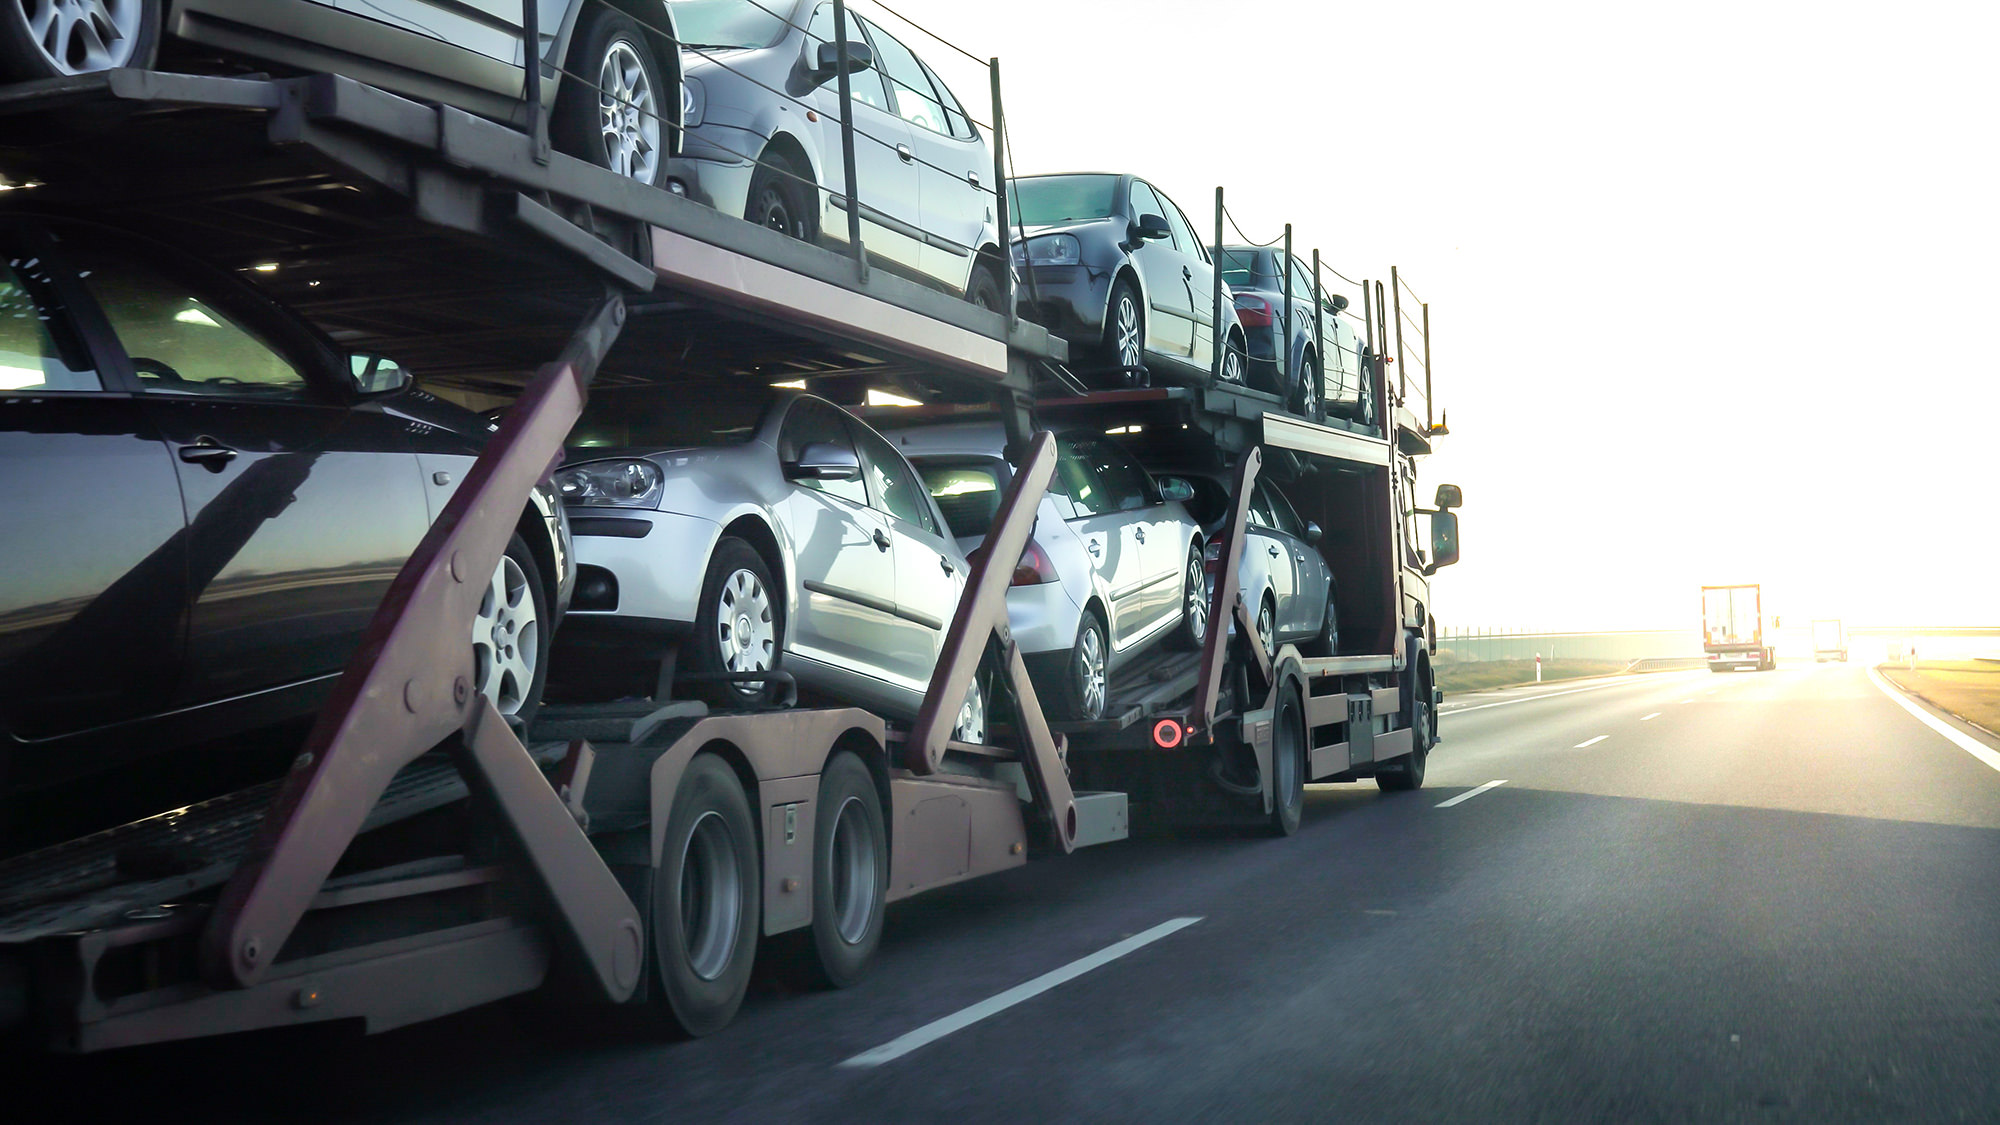 8 легковых автомобилей перевозятся на грузовике.